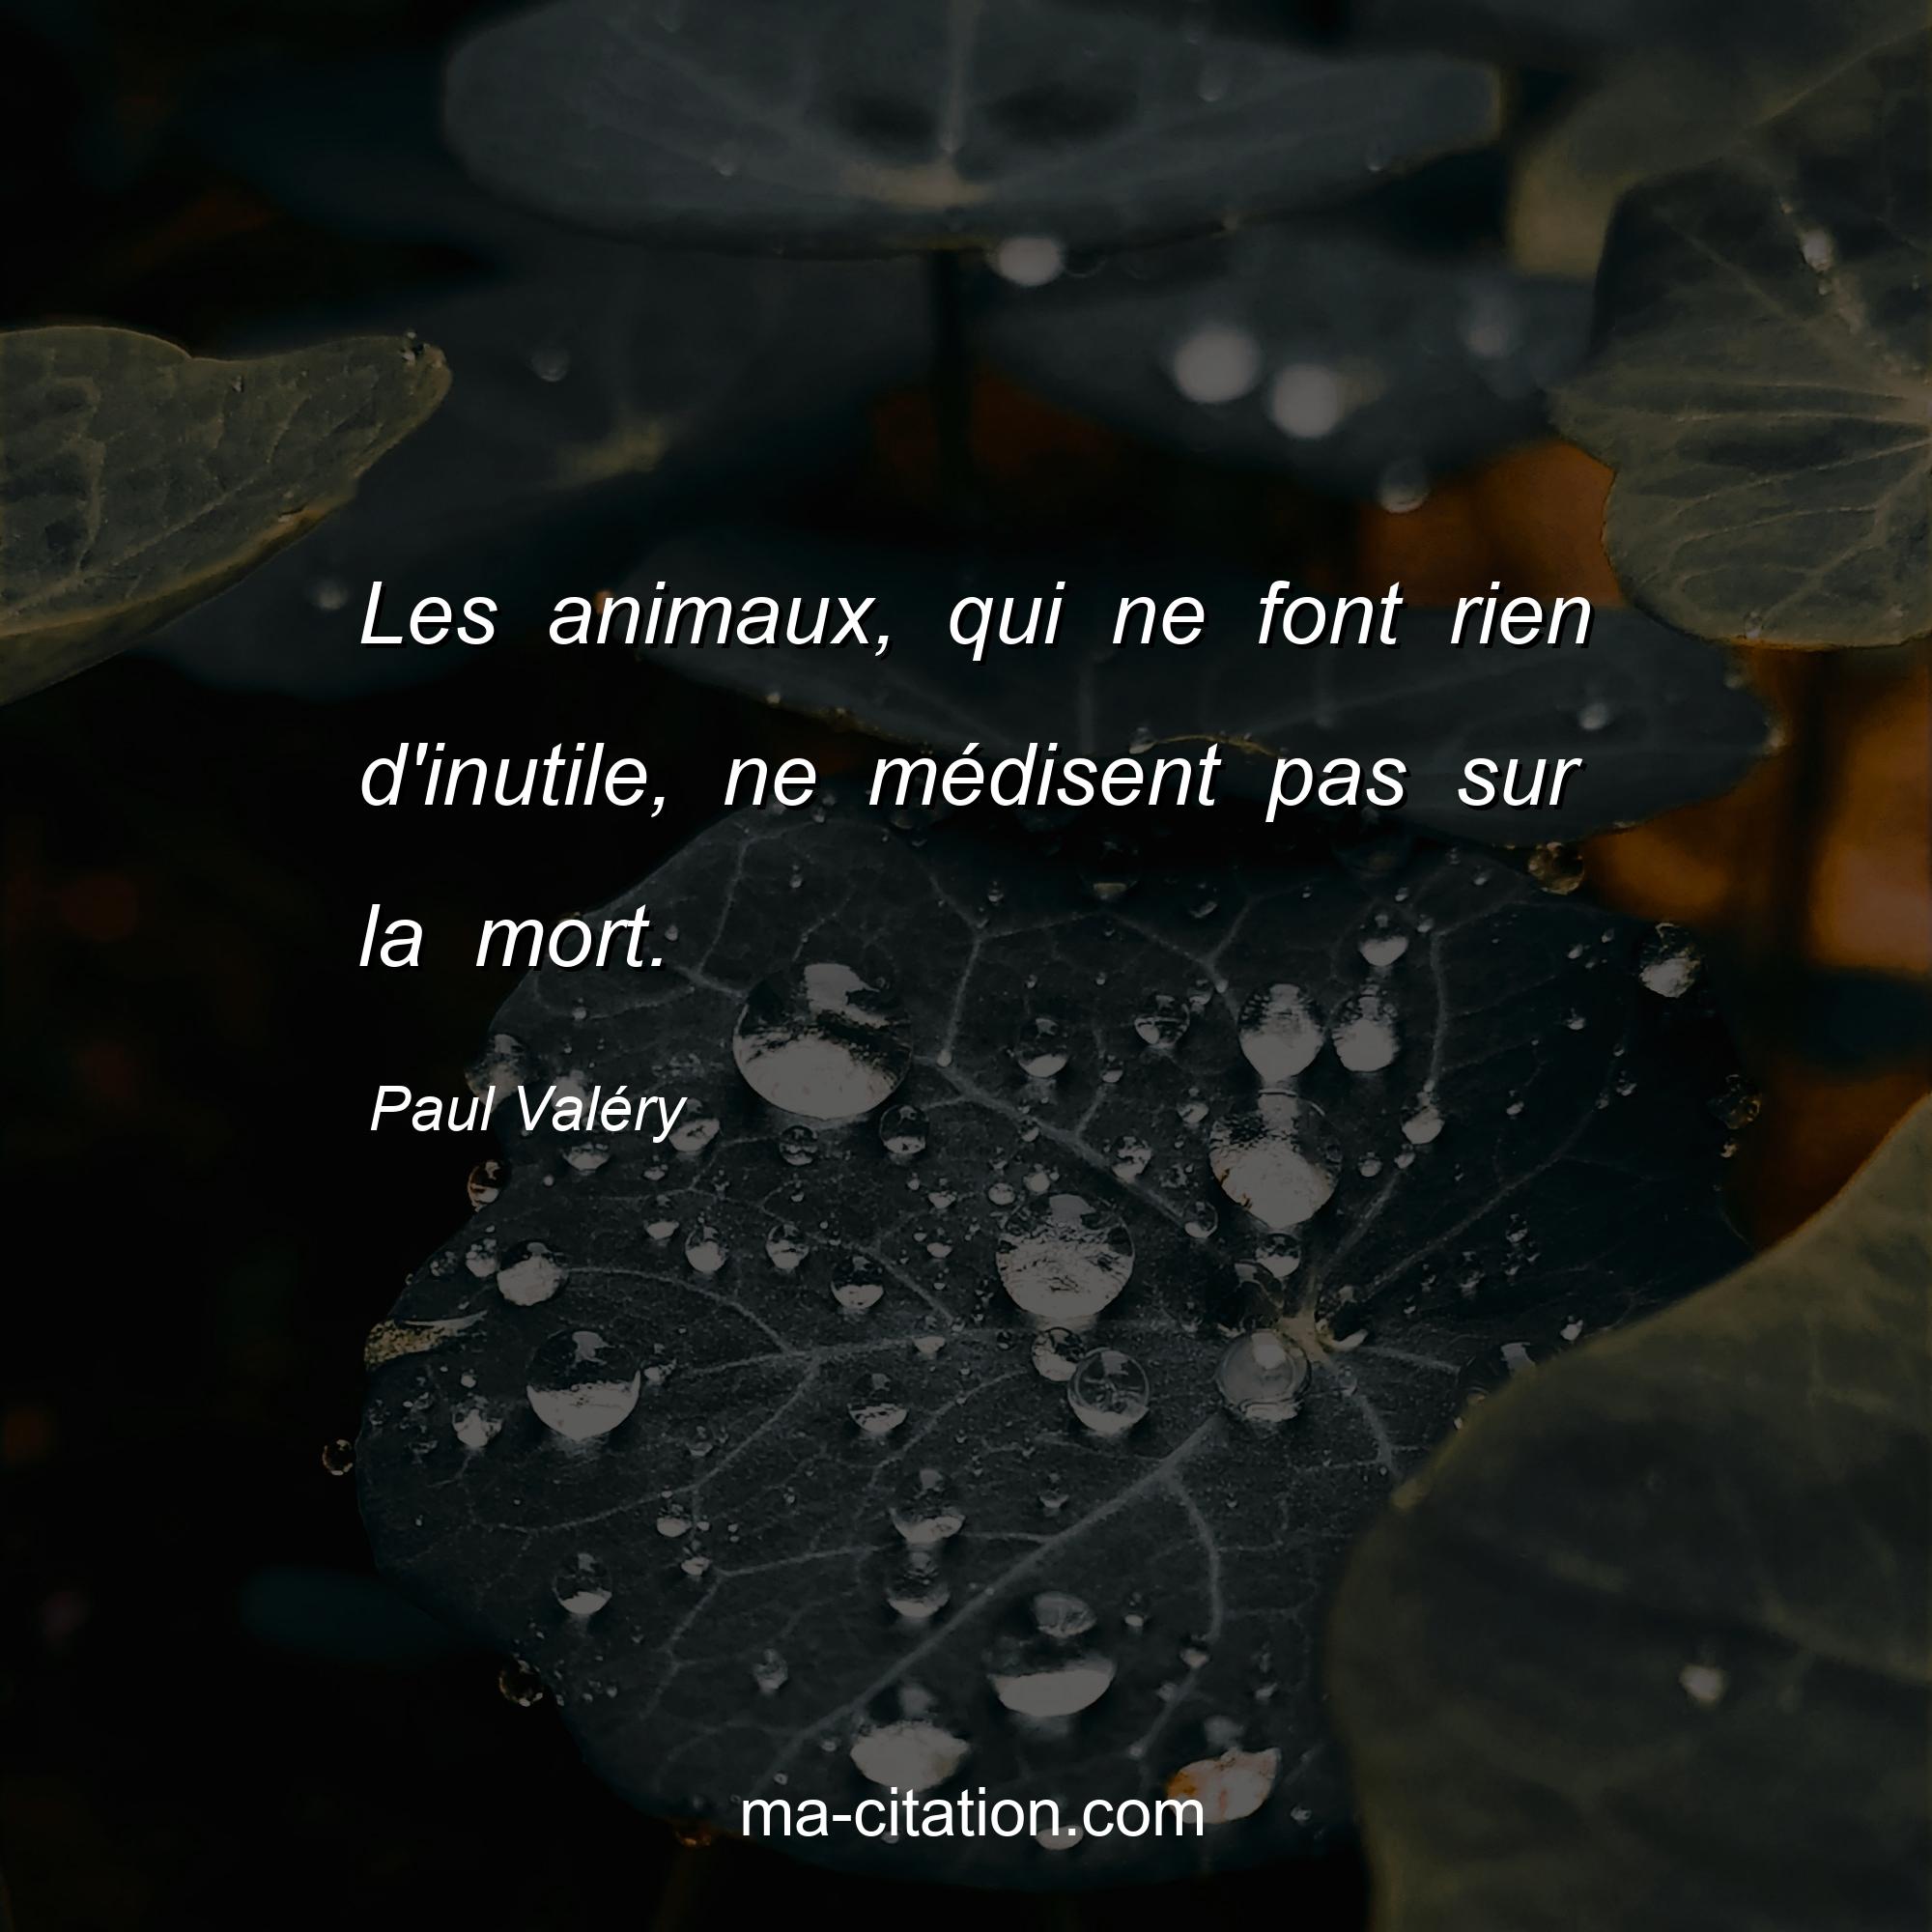 Paul Valéry : Les animaux, qui ne font rien d'inutile, ne médisent pas sur la mort.